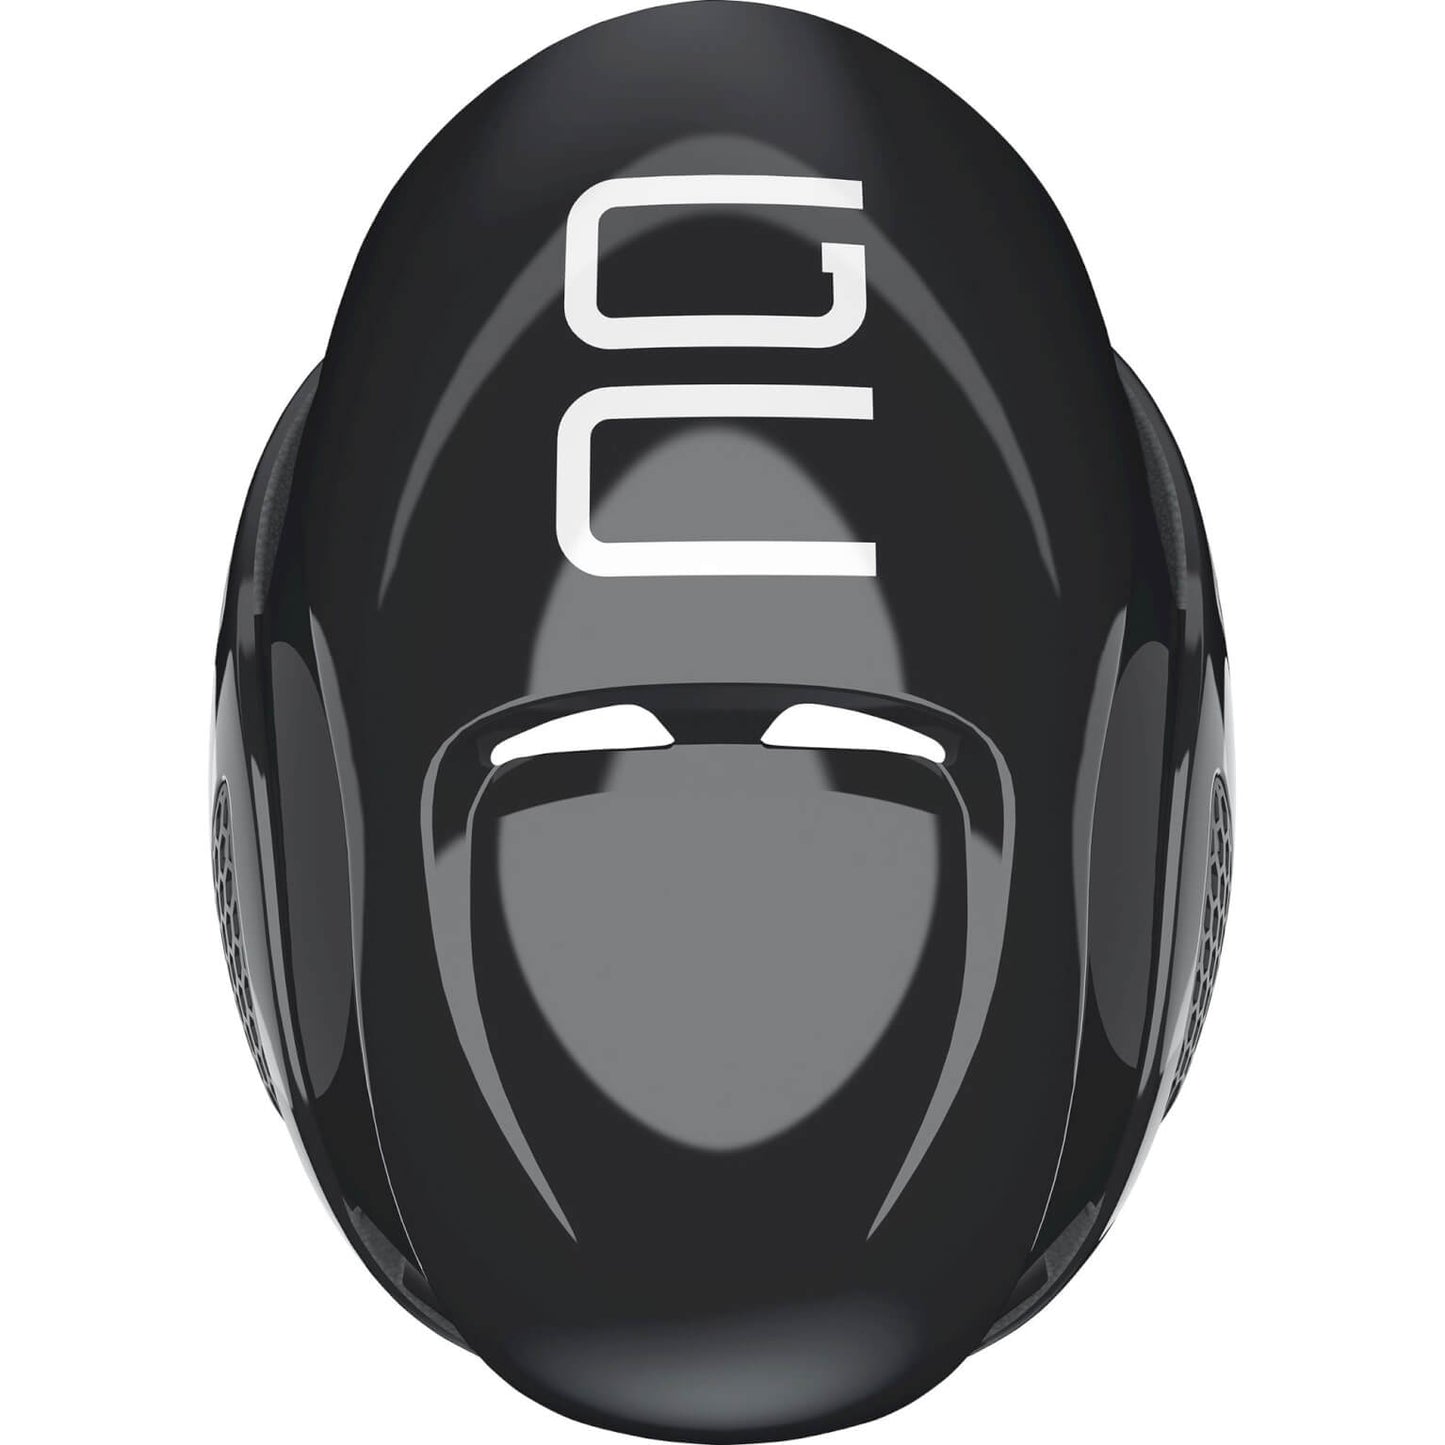 Abus Helmet GameChanger Shiny Black L 59-62cm